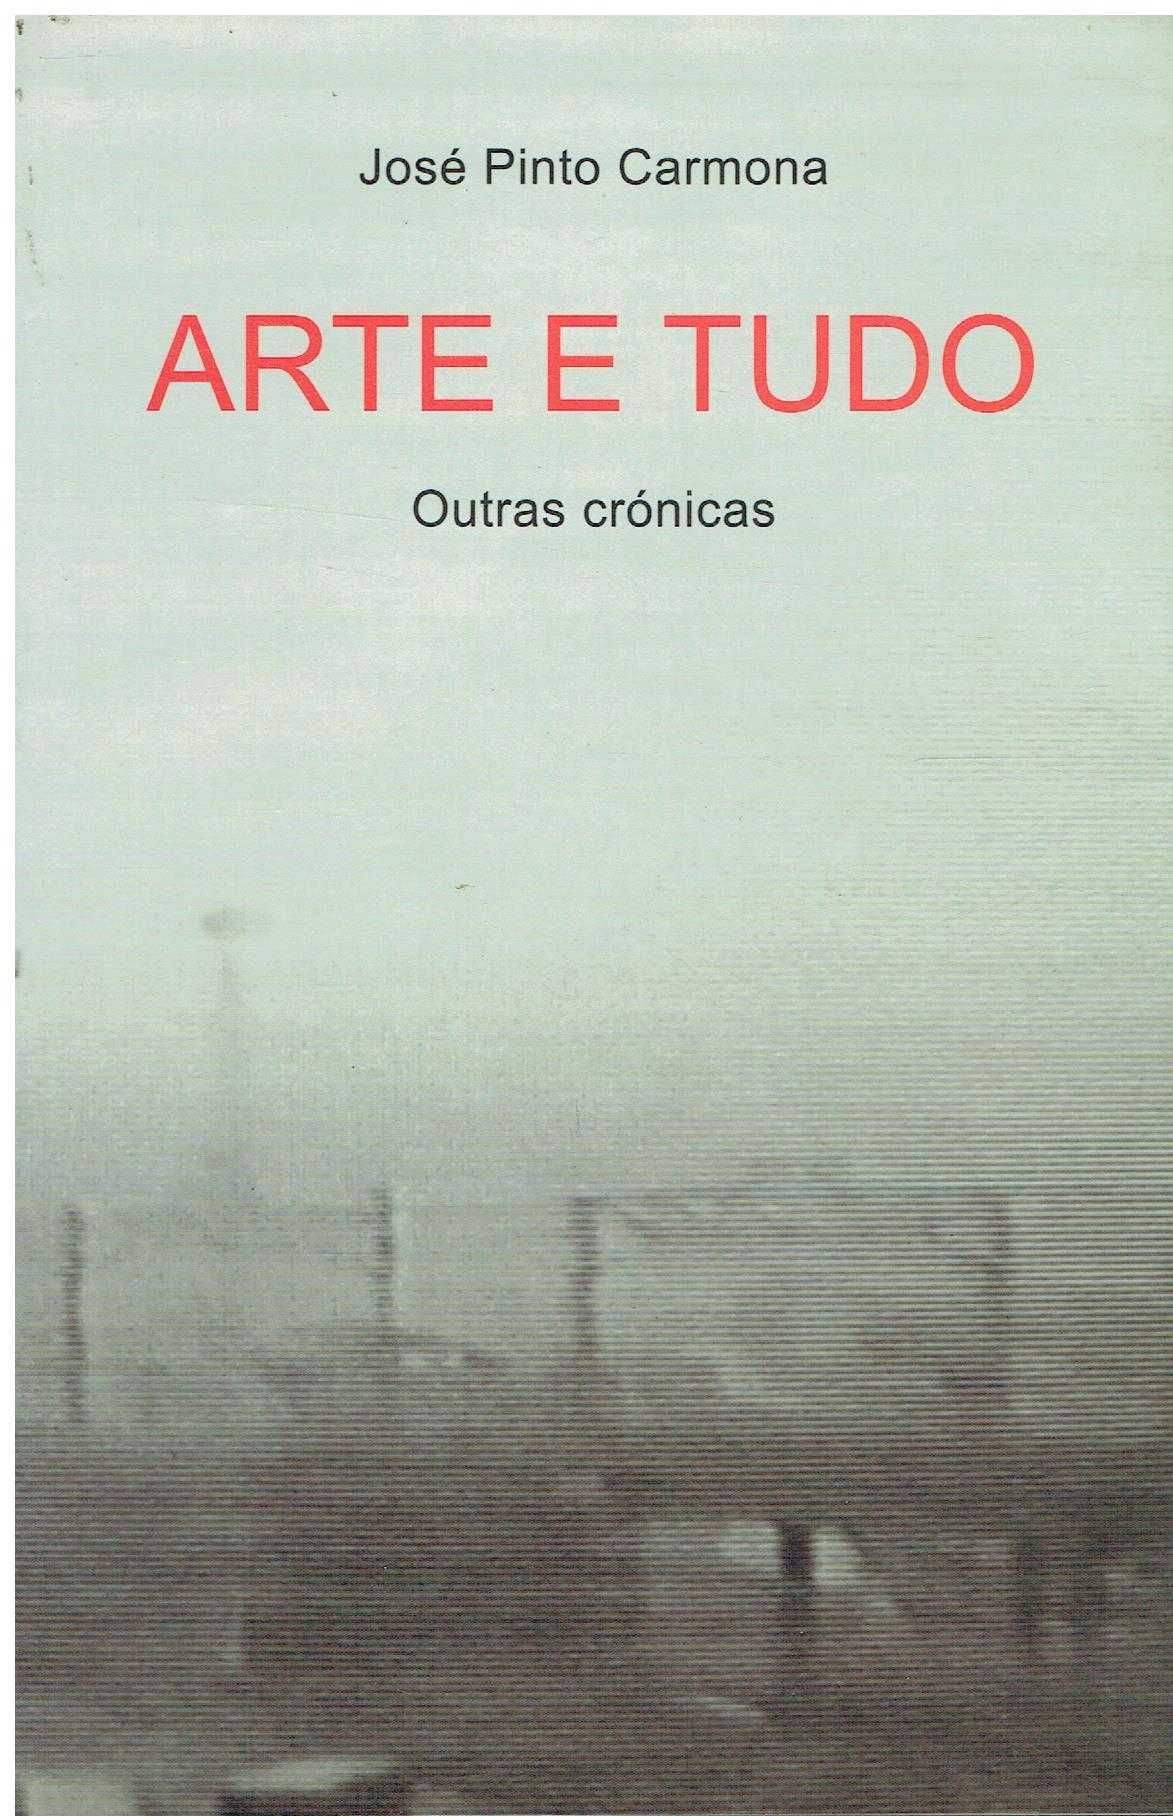 13872

Arte e tudo : outras crónicas  
de José Pinto Carmona.